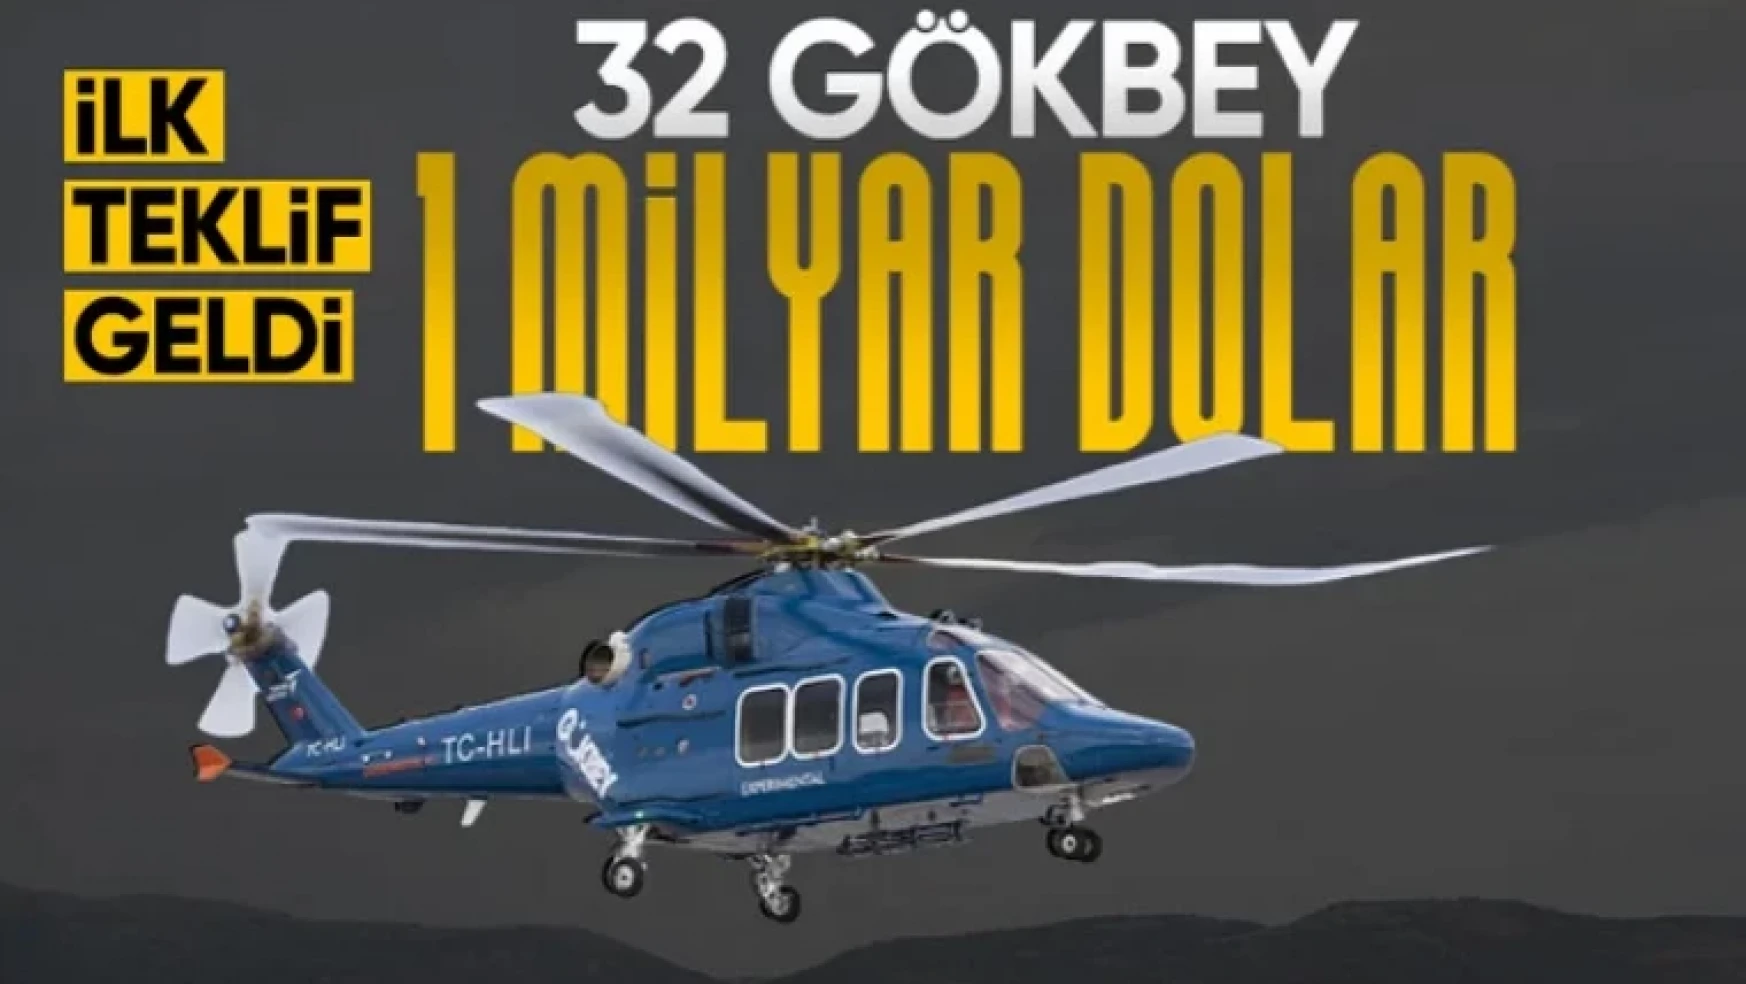 Milli helikopter Gökbey'e yurt dışından talip: 1 milyar dolarlık teklif